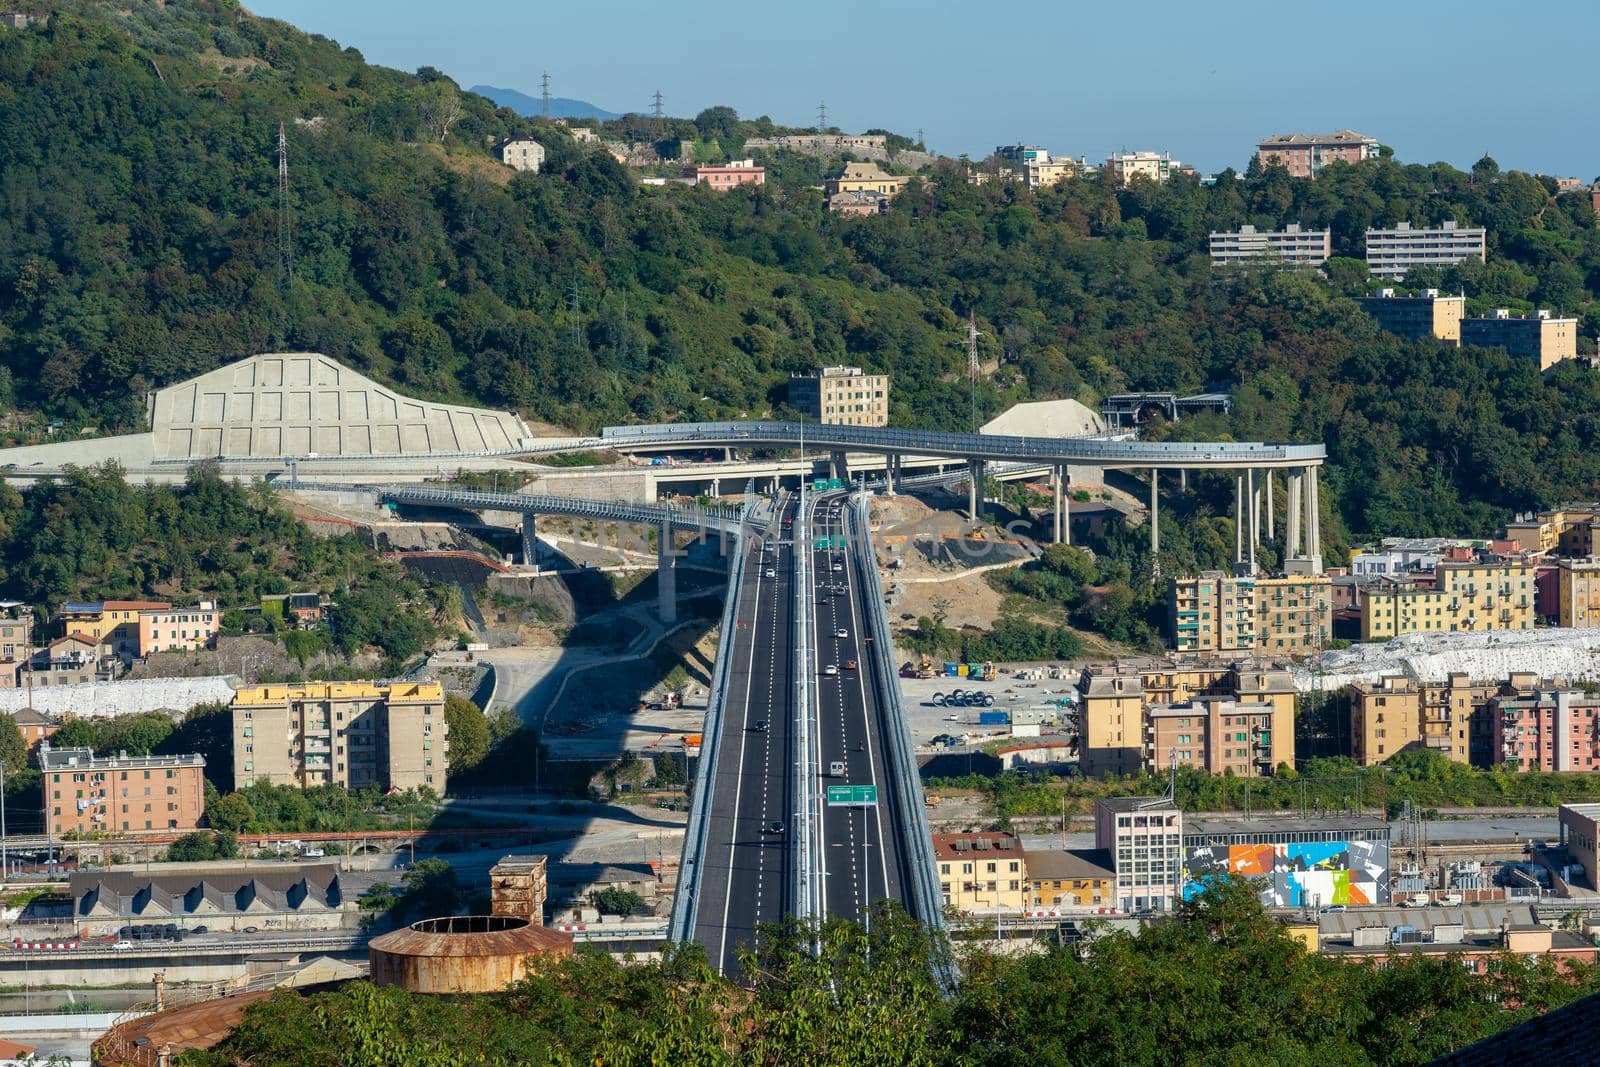 Top View of the new San Giorgio bridge in Genoa, Italy.